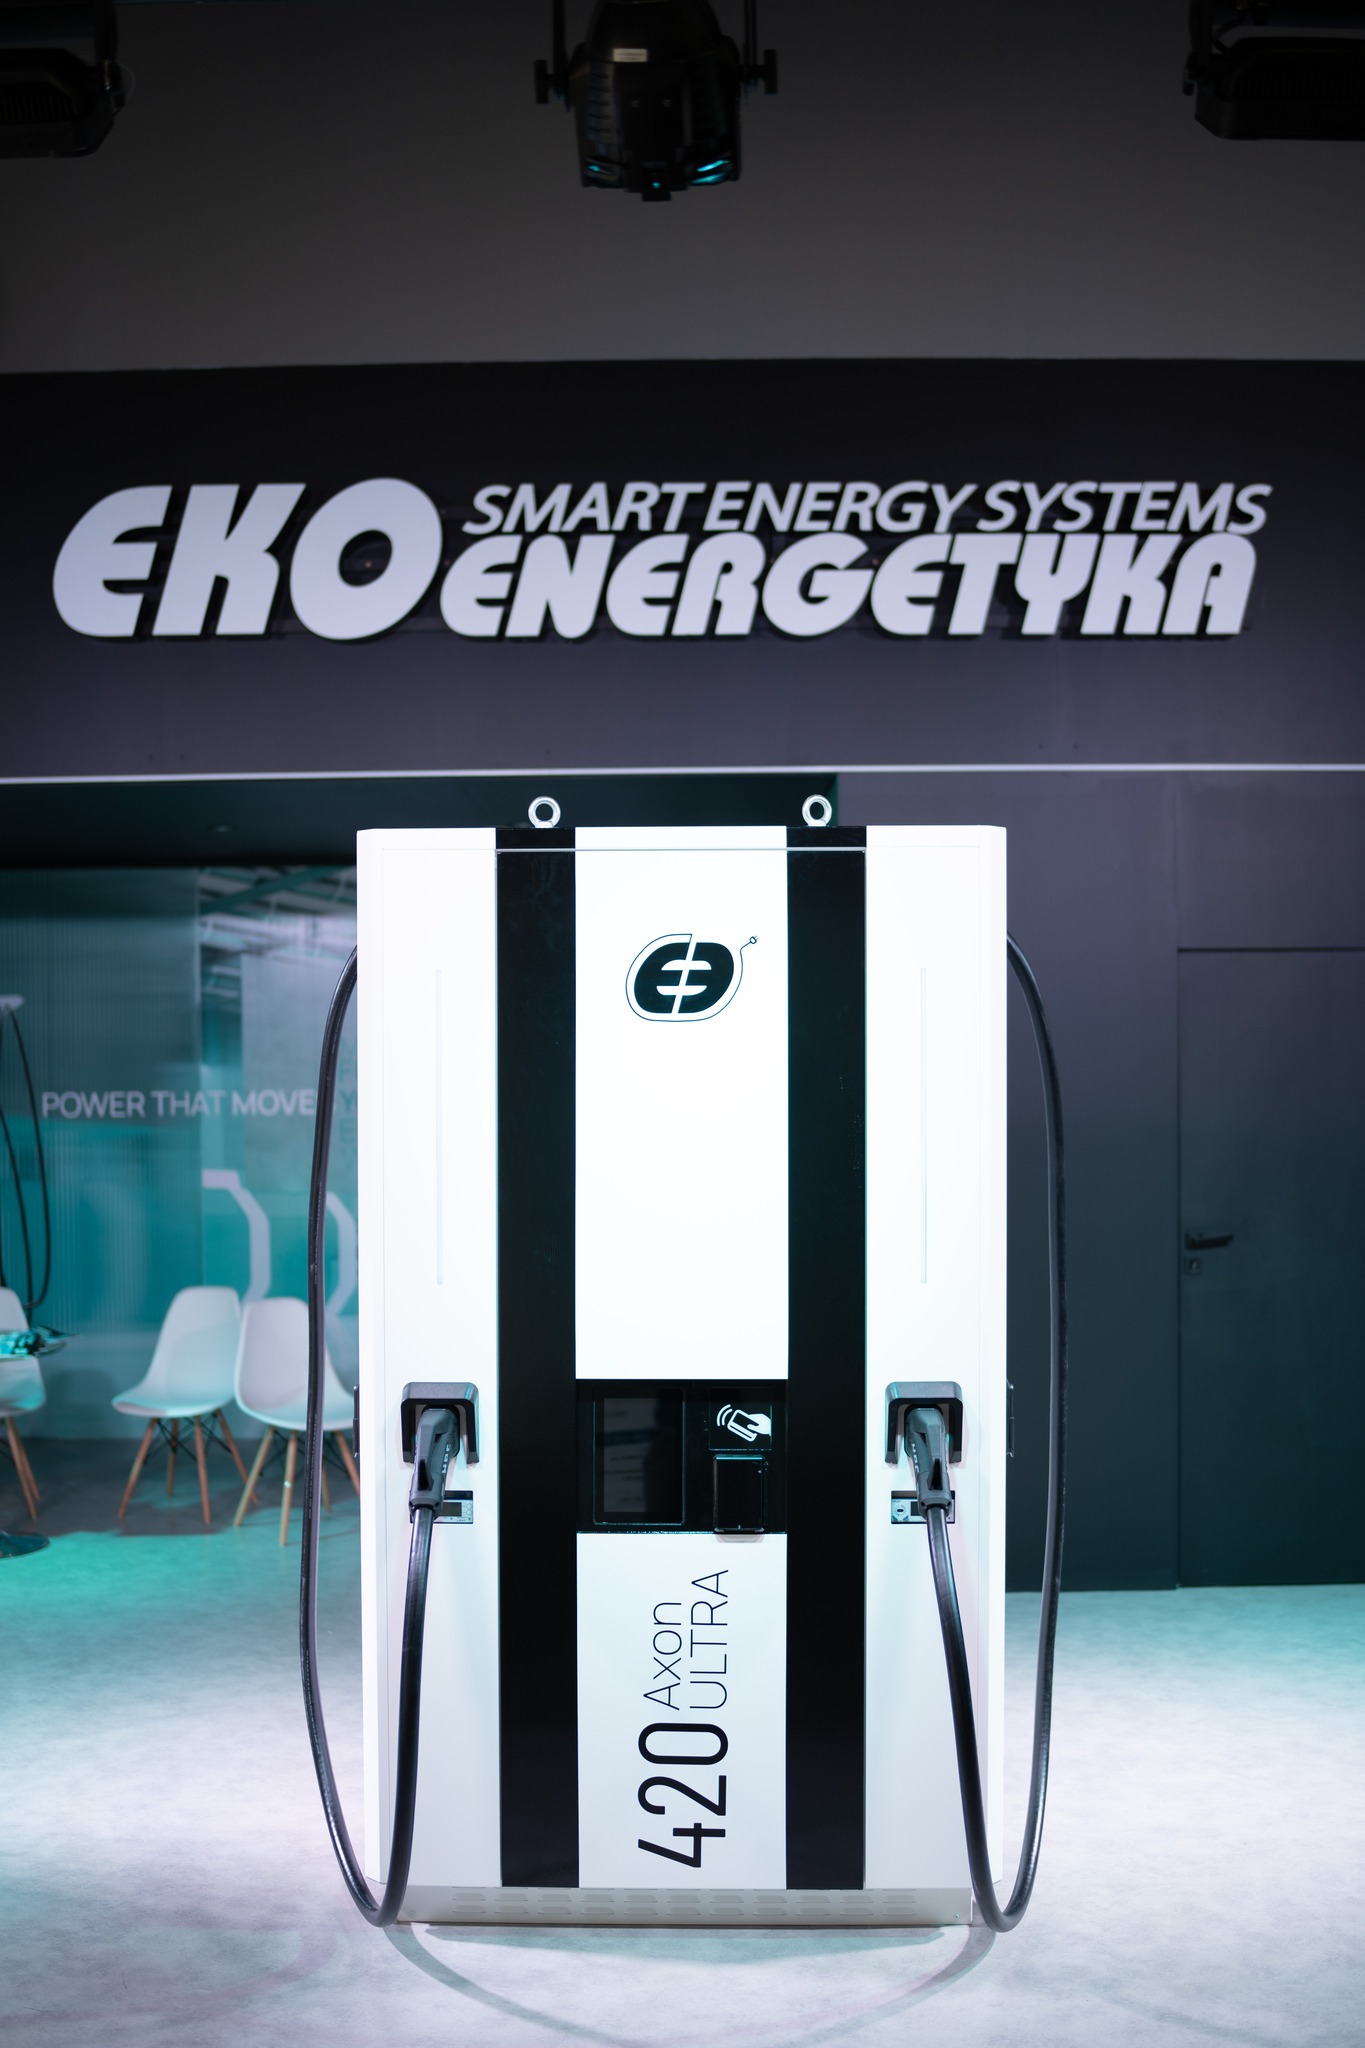 ekoenergetyka system combo, Ekoenergetyka